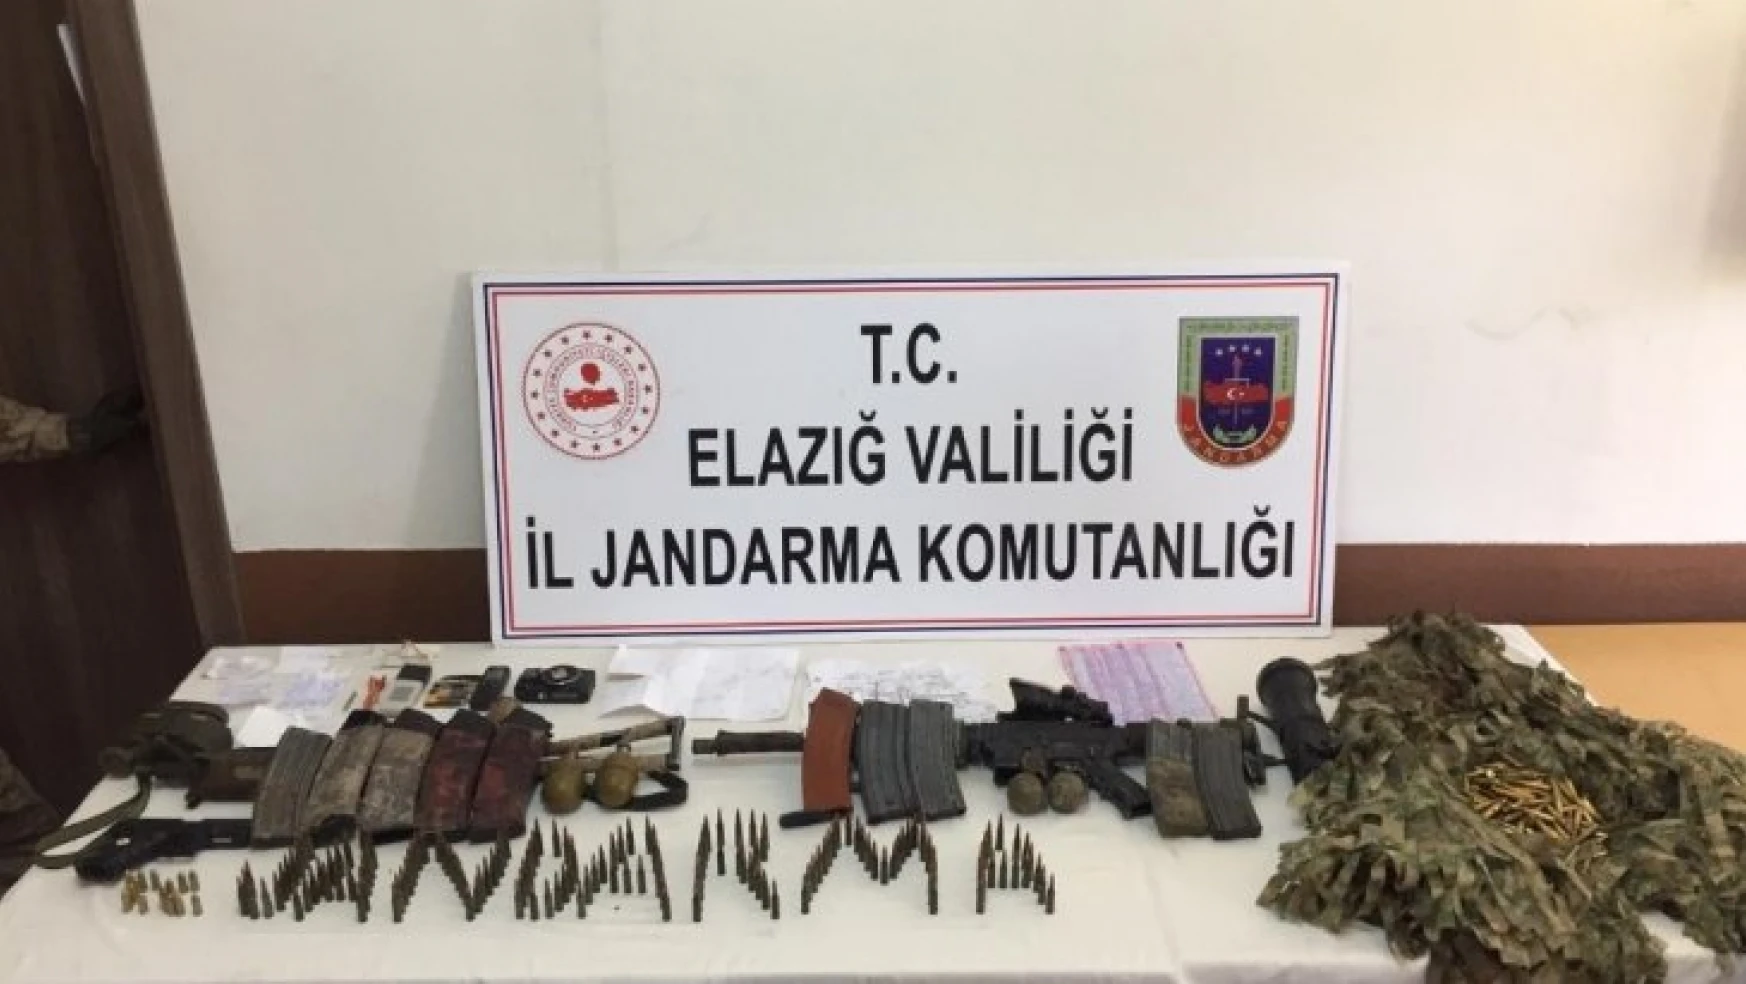 Elazığ'da etkisiz hale getirilen 16'sı sivil 21 şehidin faili ikinci terörist de turuncu kategoride çıktı